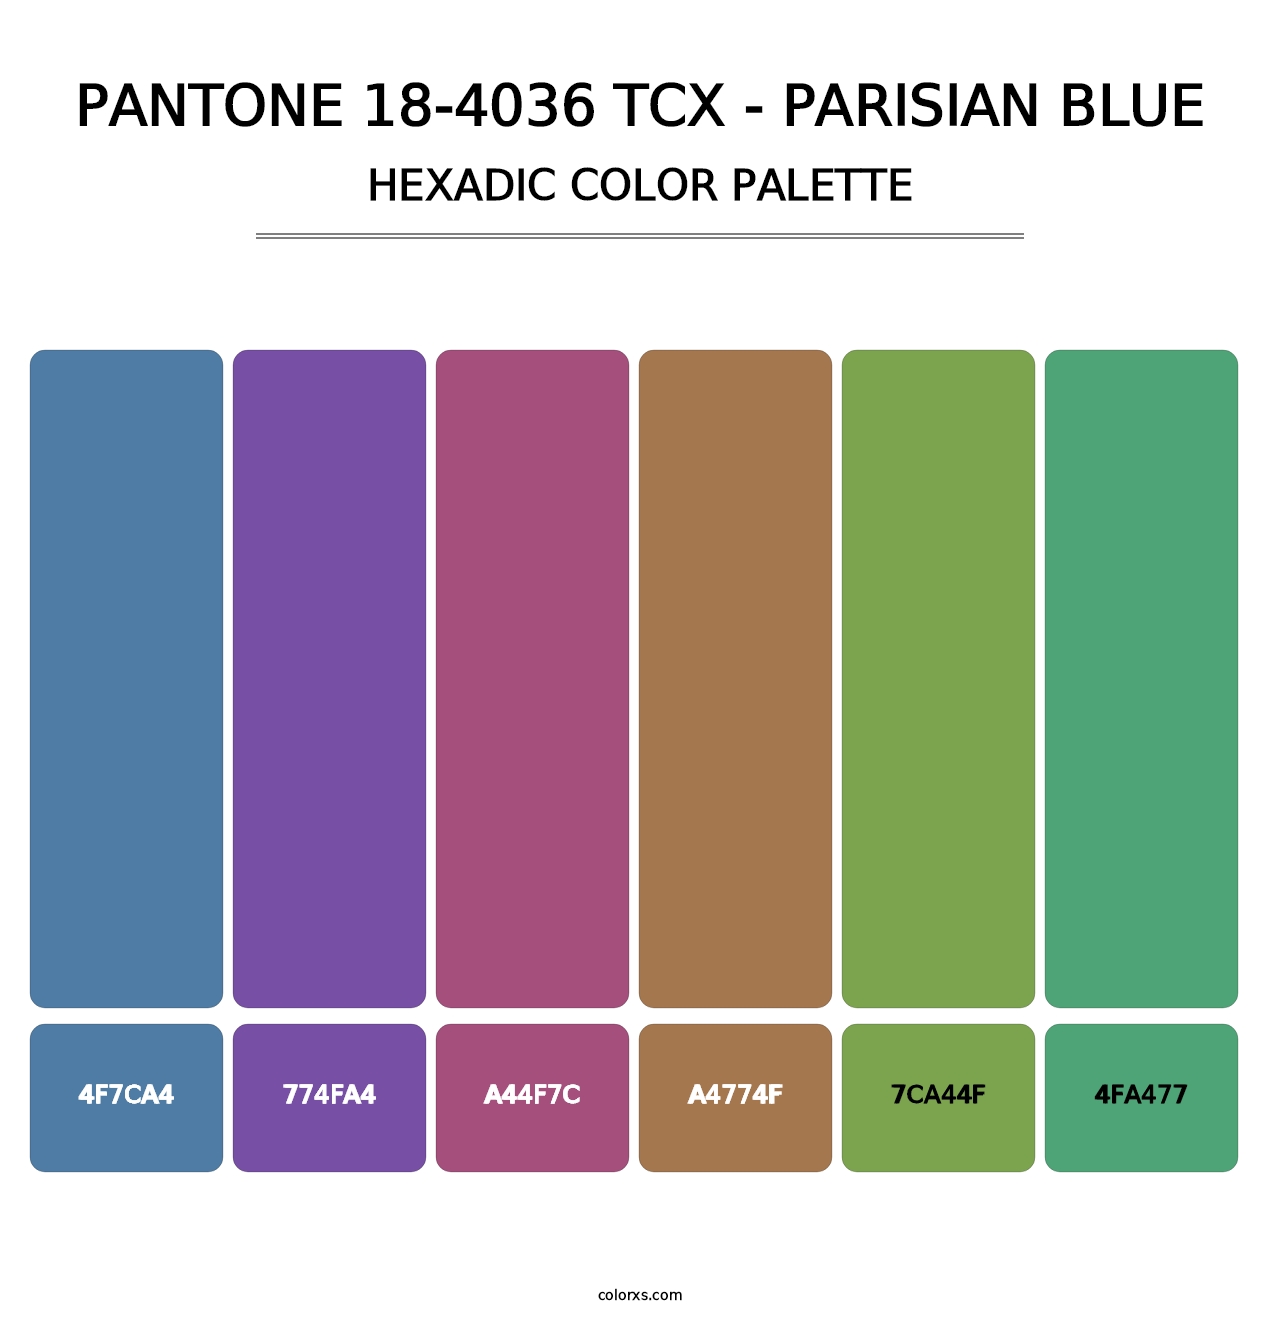 PANTONE 18-4036 TCX - Parisian Blue - Hexadic Color Palette